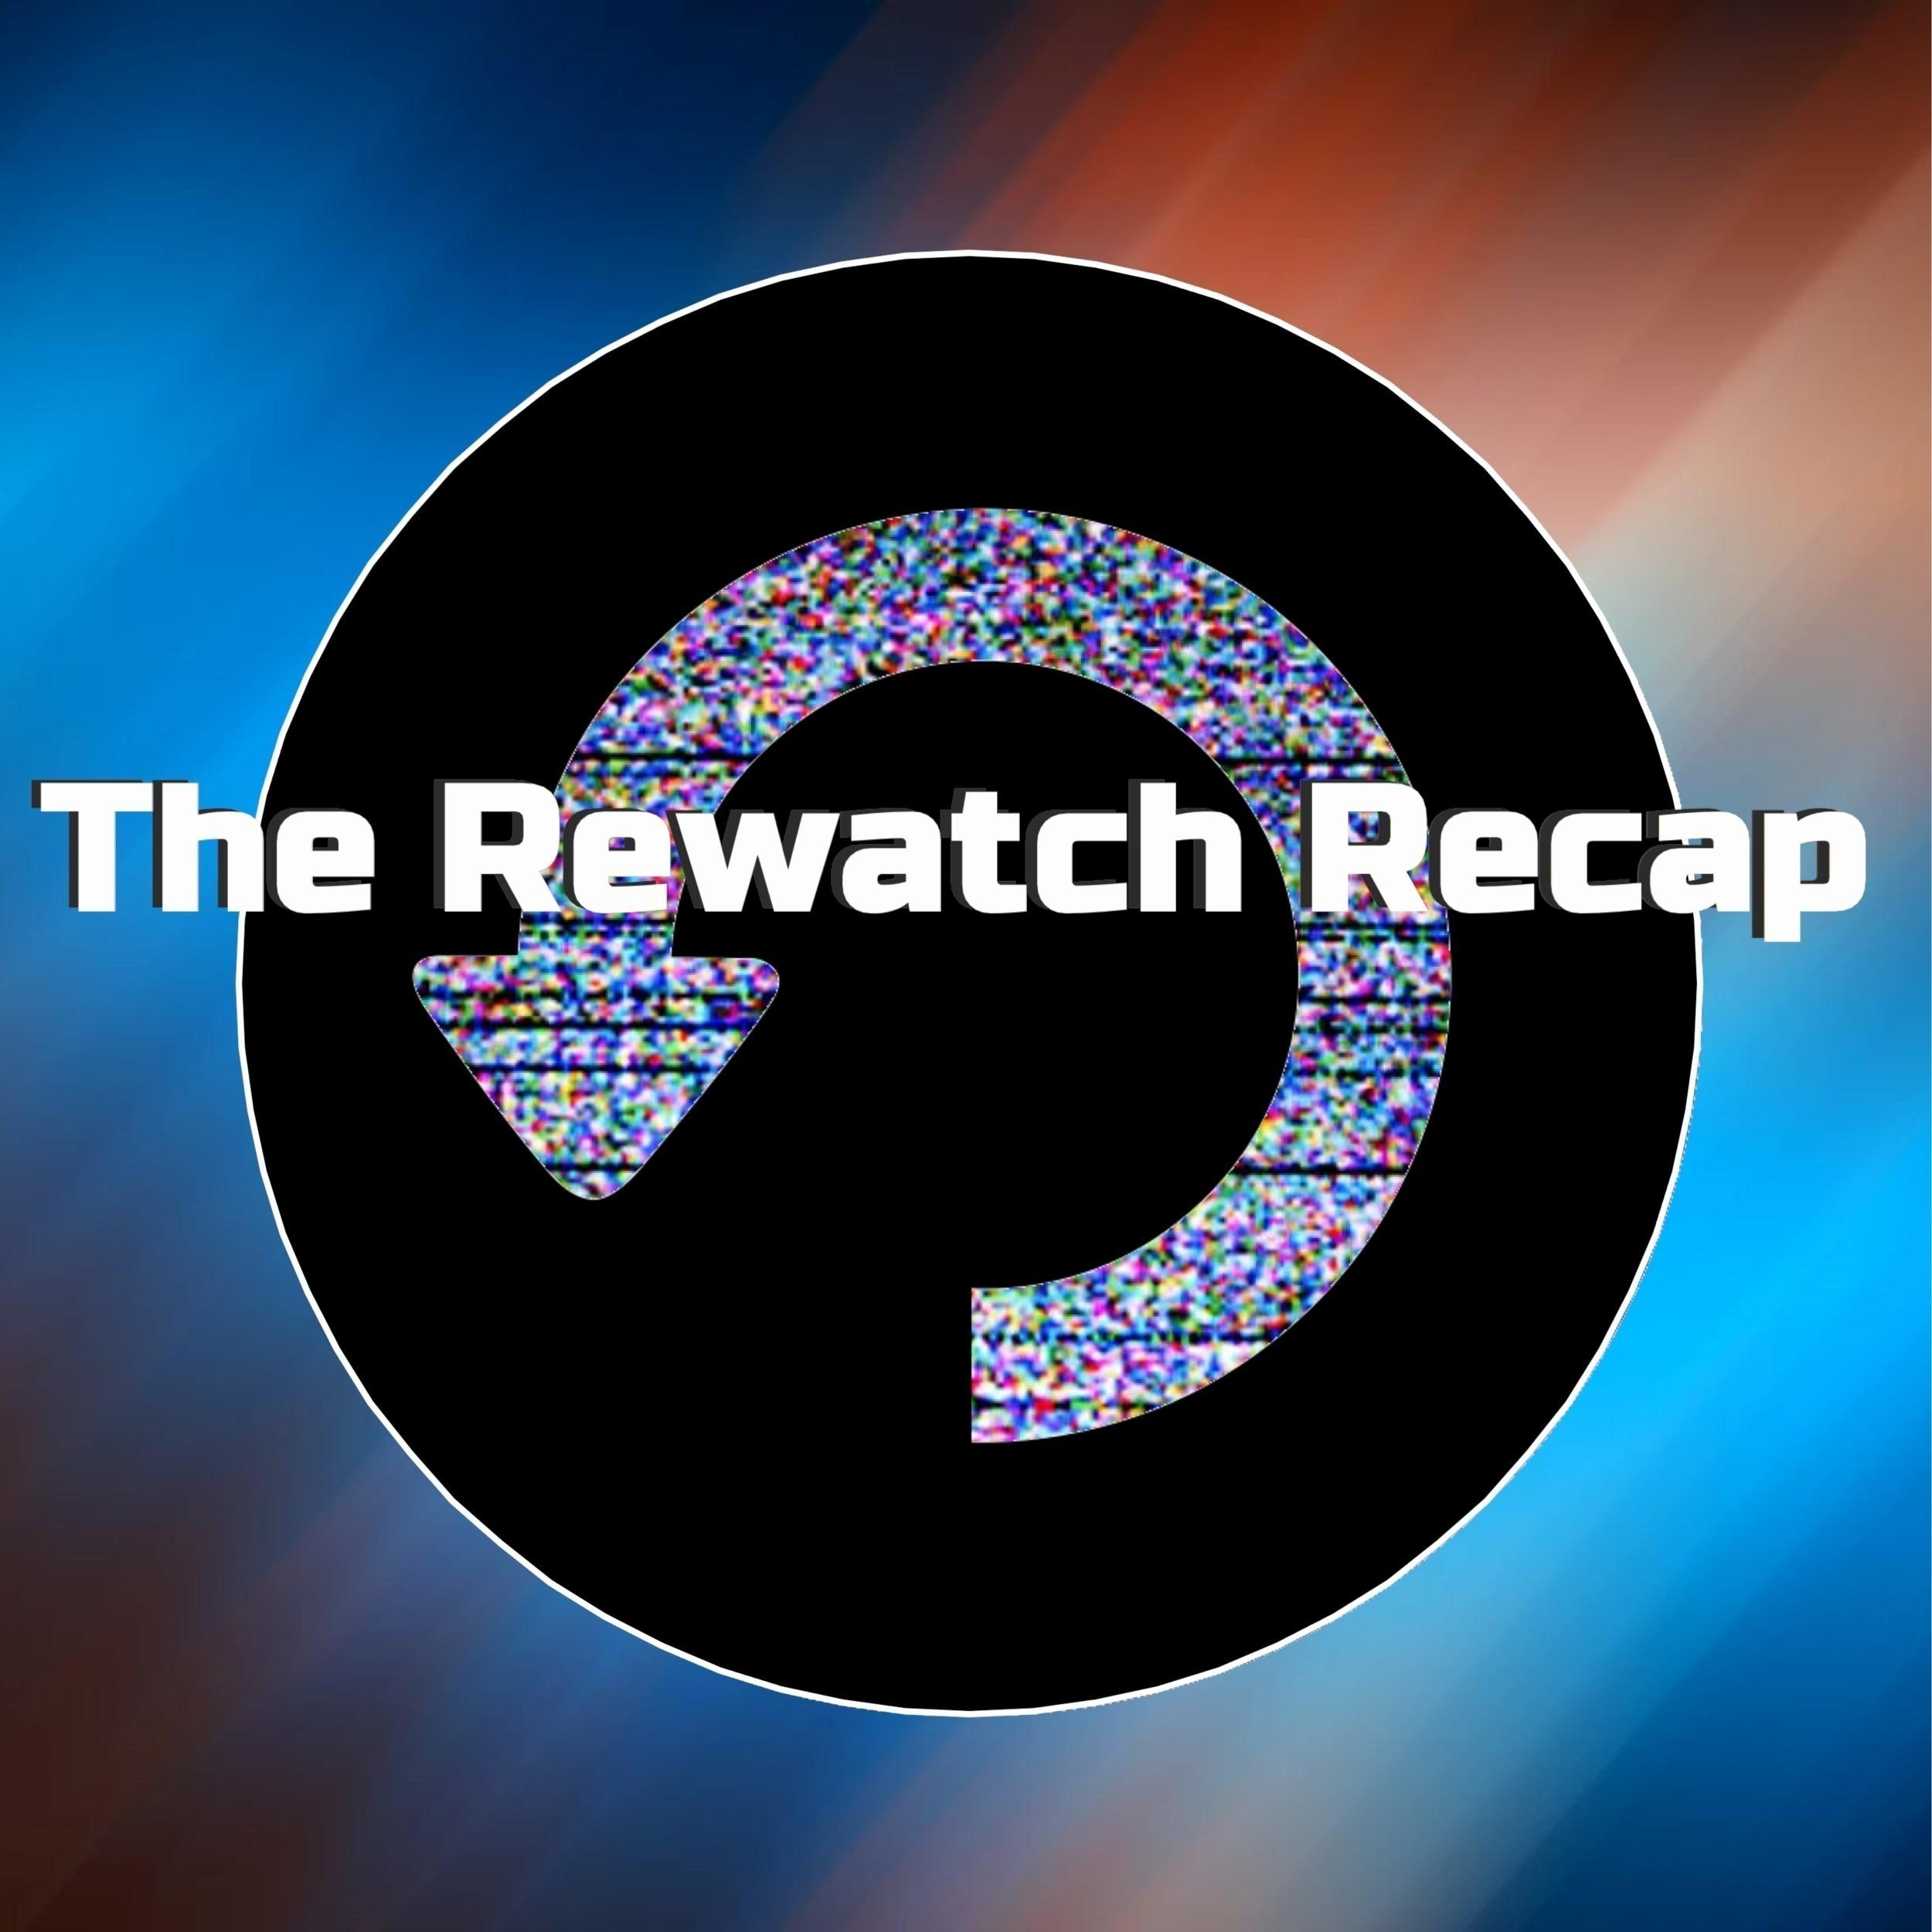 The Rewatch Recap